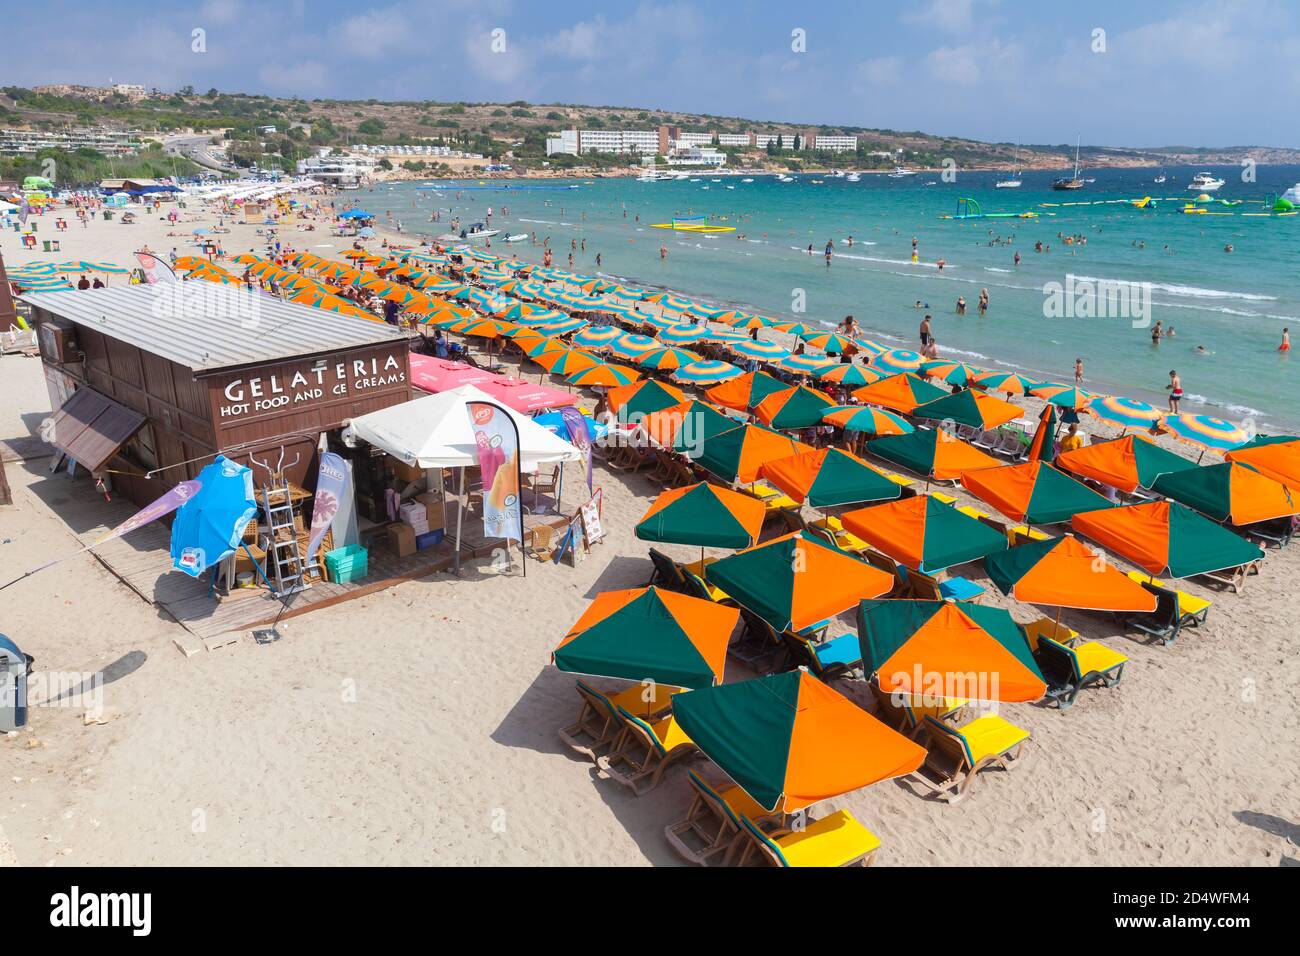 Mellieha, Malta - 30 de agosto de 2019: Popular playa pública con restaurantes y sombrillas, la gente descansa en la costa del mar Foto de stock